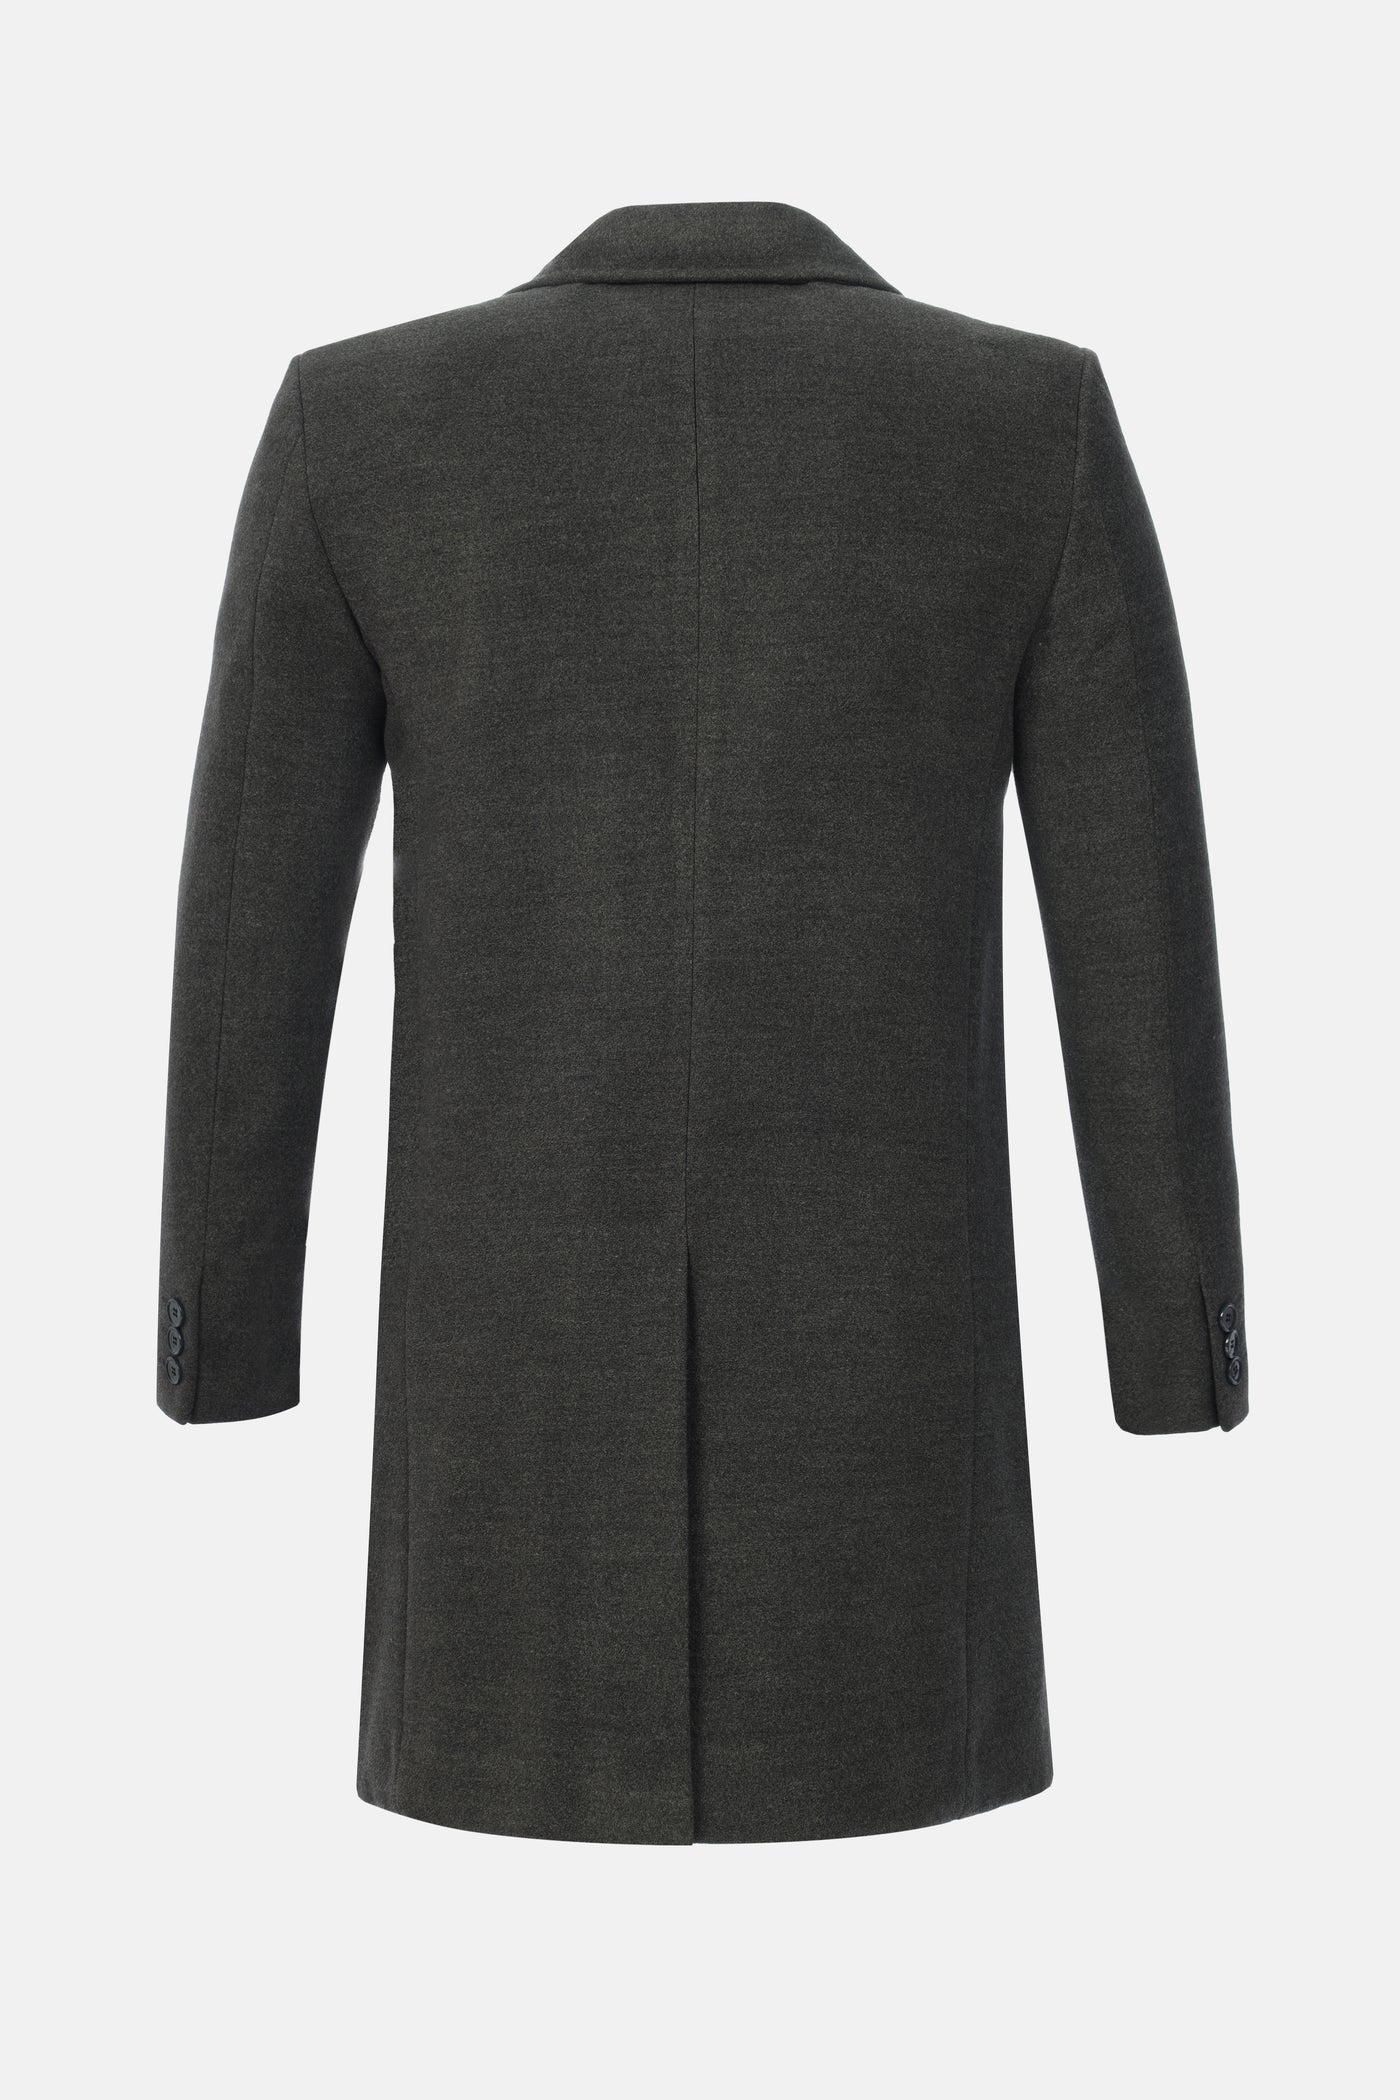 Mac Basic Long Dark Gray Coat